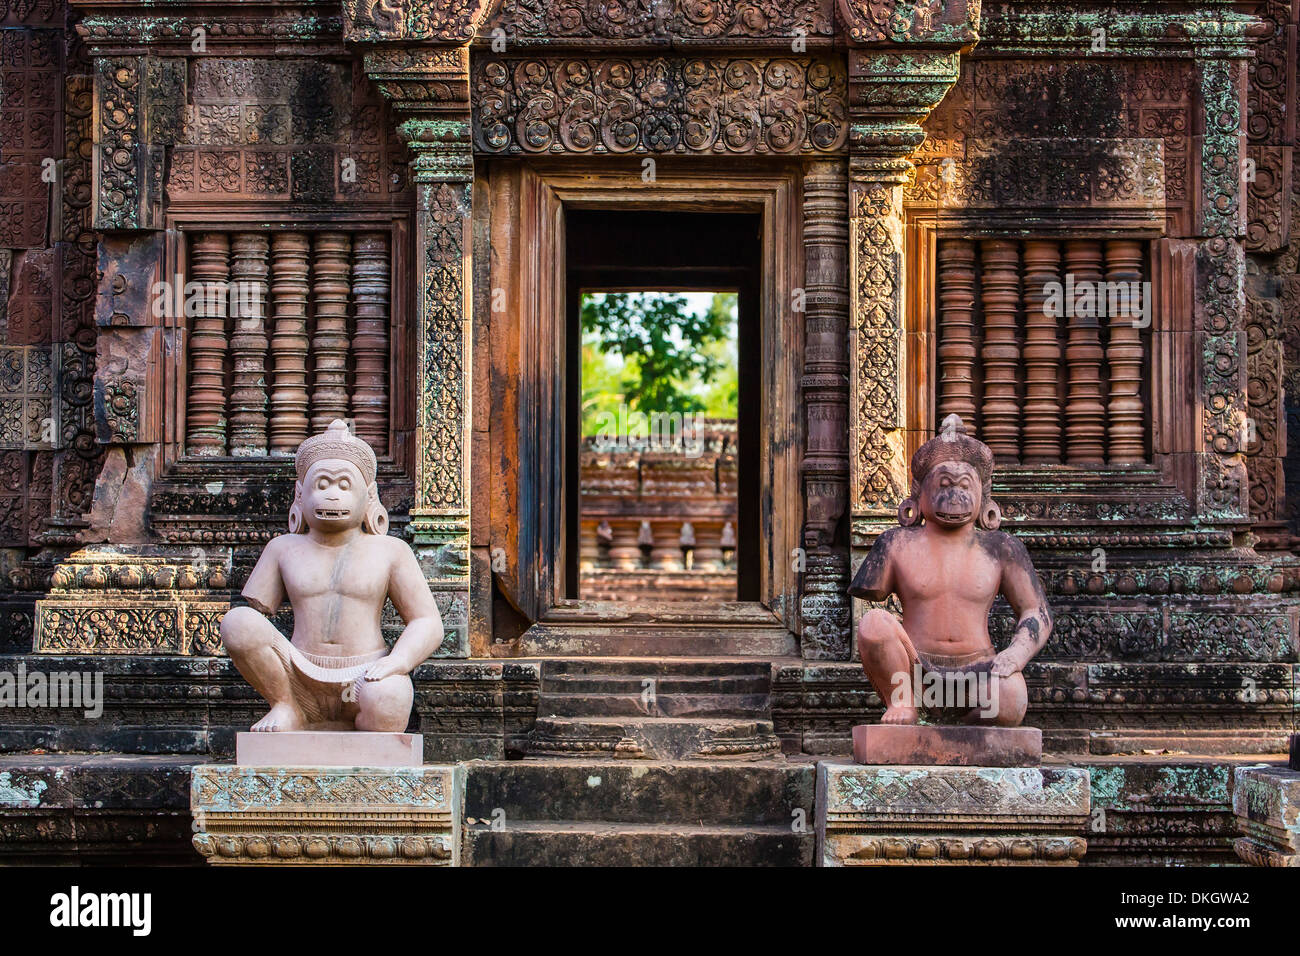 Temple de Banteay Srei à Angkor, Site du patrimoine mondial de l'UNESCO, la Province de Siem Reap, Cambodge, Indochine, Asie du Sud, Asie Banque D'Images